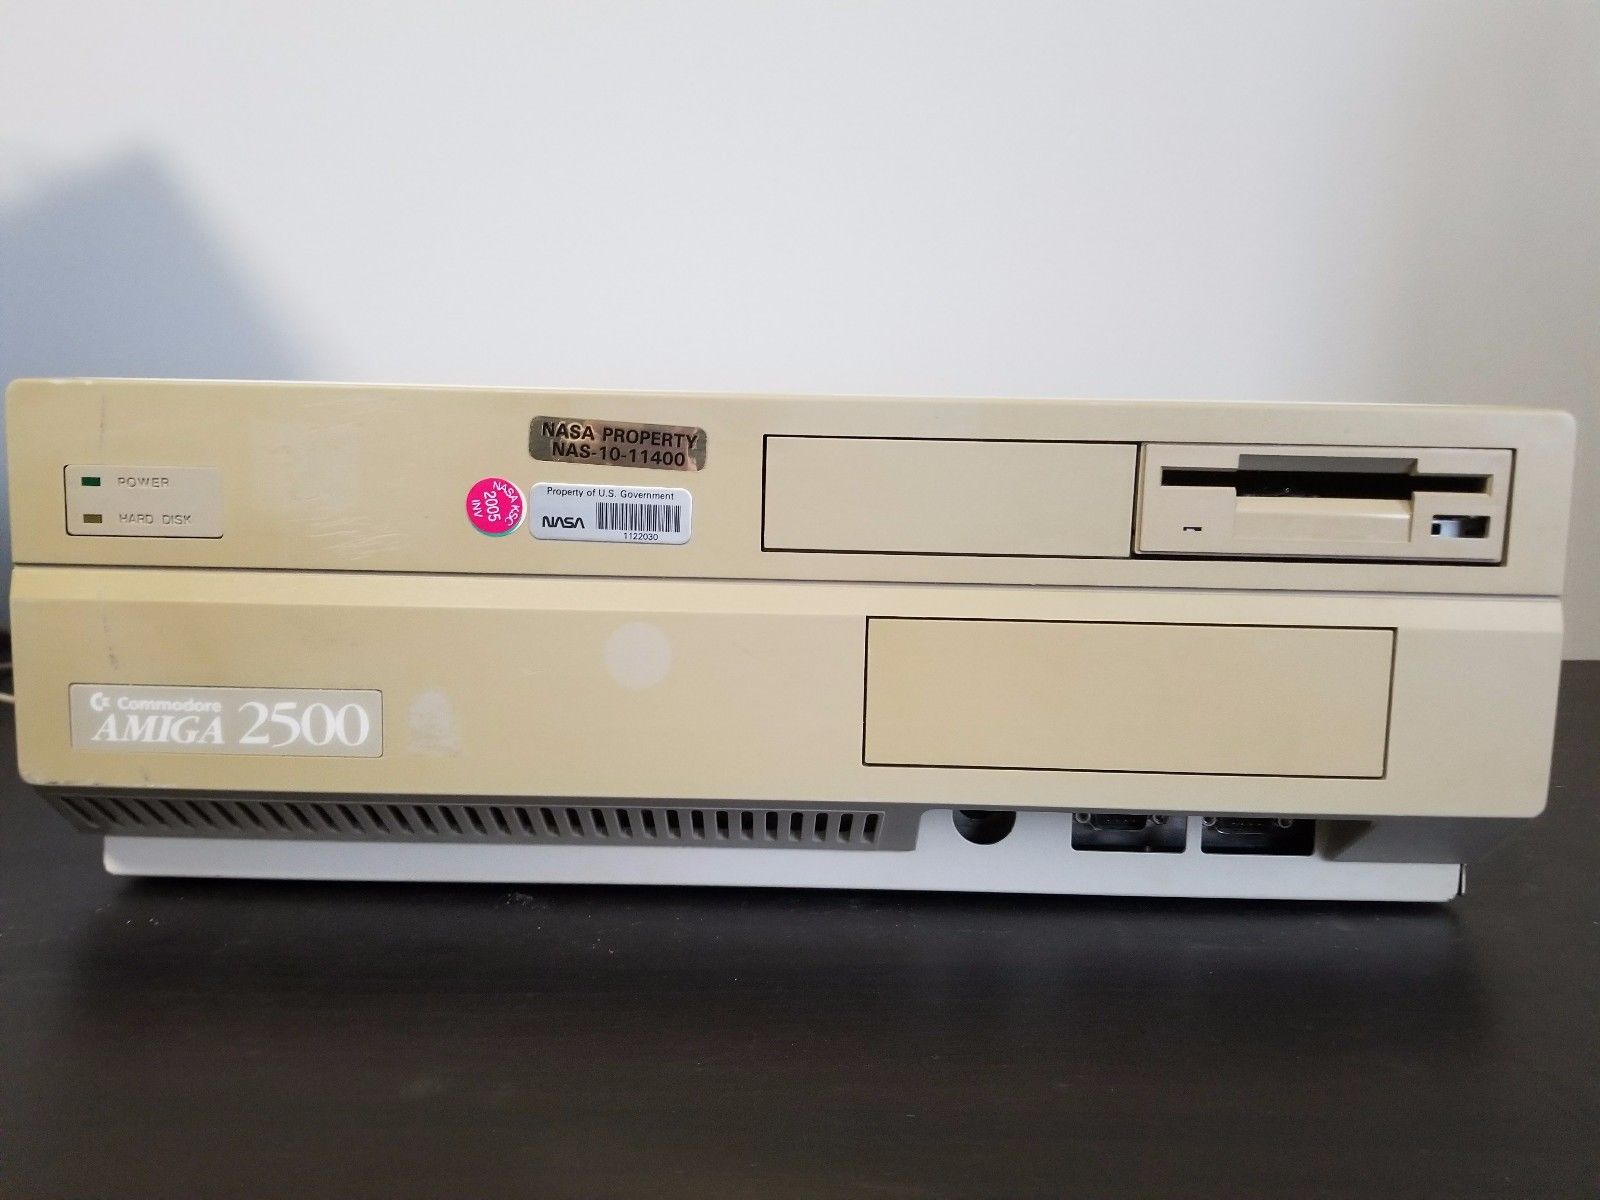 НАСА выставило на продажу свой старый компьютер Amiga 2500 - 1